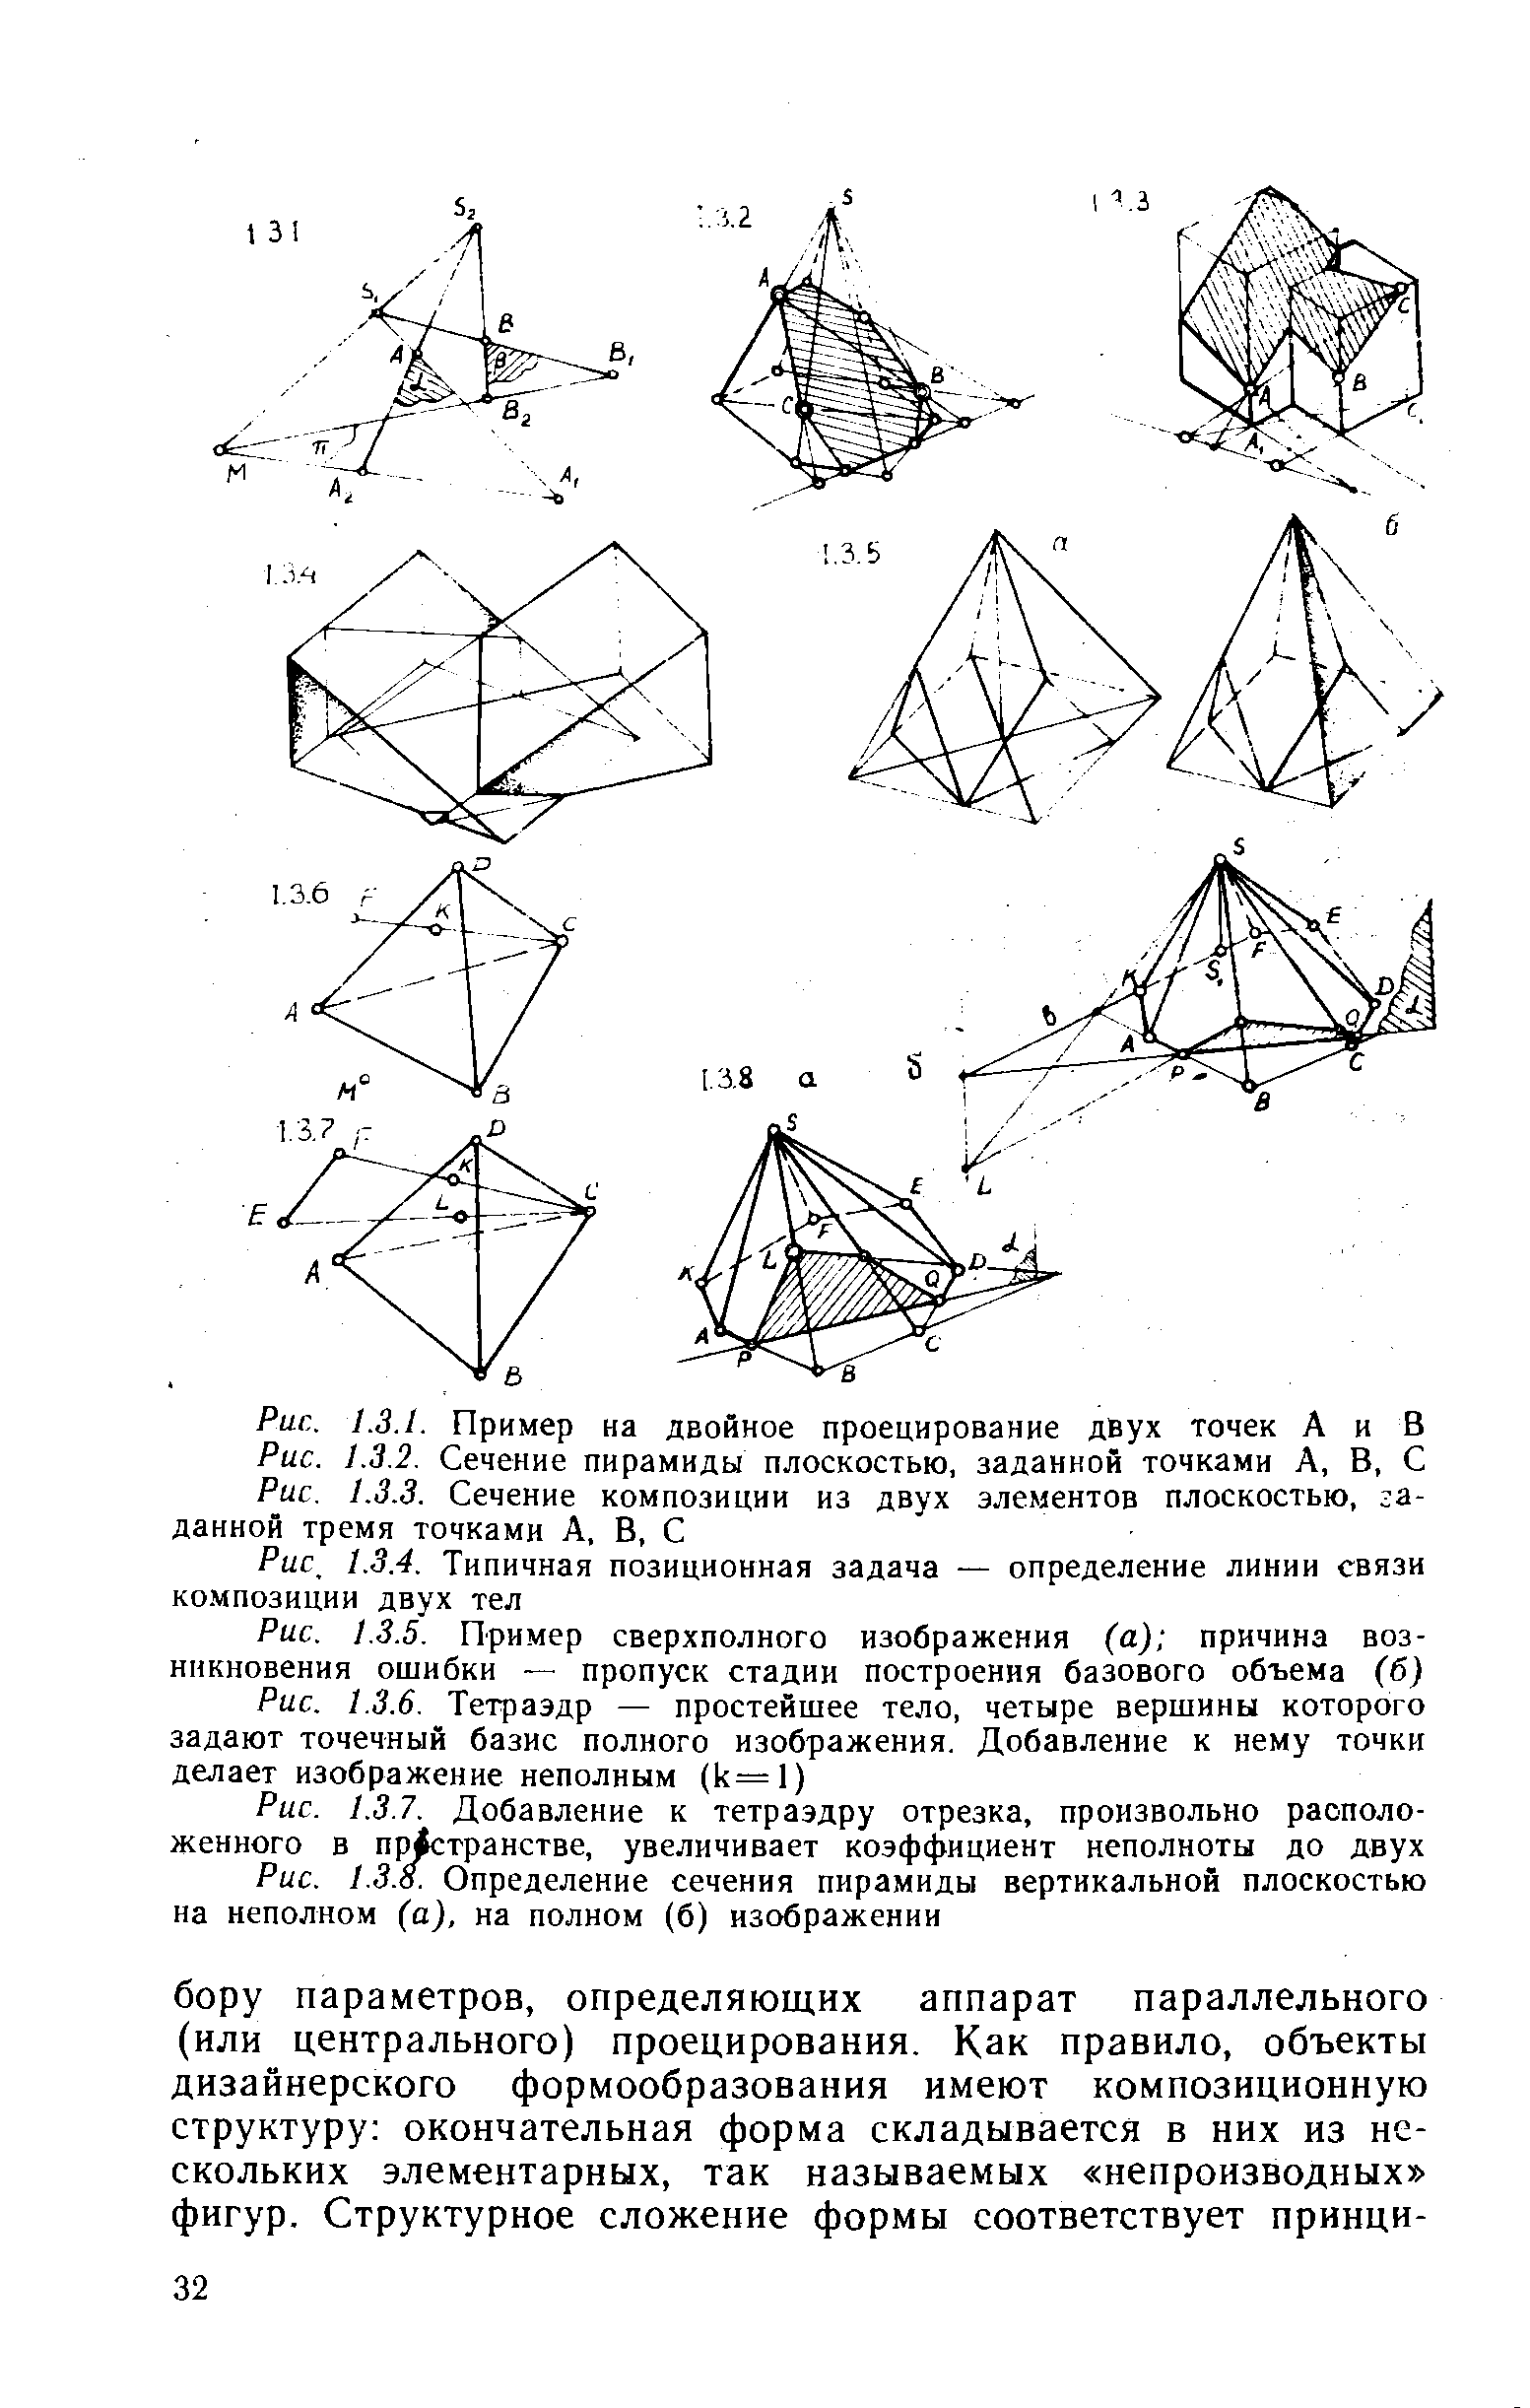 Рис. 1.3.7. Добавление к тетраэдру отрезка, произвольно расположенного в п[ транстве, увеличивает коэффициент неполноты до двух Рис. 1.3.0. Определение сечения пирамиды вертикальной плоскостью на неполном (а), на полном (б) изображении
